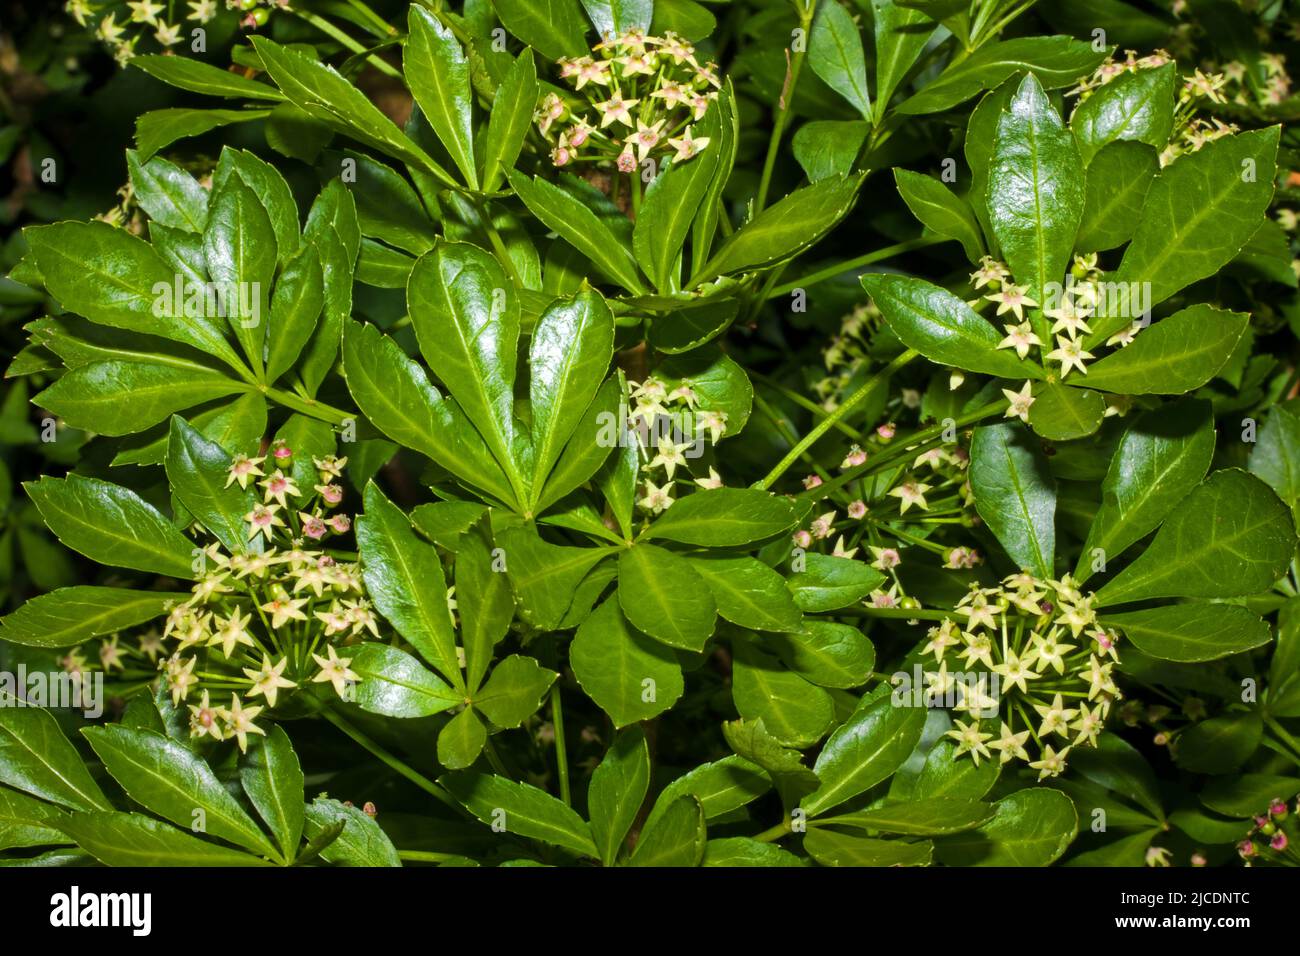 Eleutherococcus sieboldianus (aralia à cinq feuilles) est un arbuste à feuilles caduques épineuses originaire de la province d'Anhui en Chine, mais introduit ailleurs pour les jardins. Banque D'Images